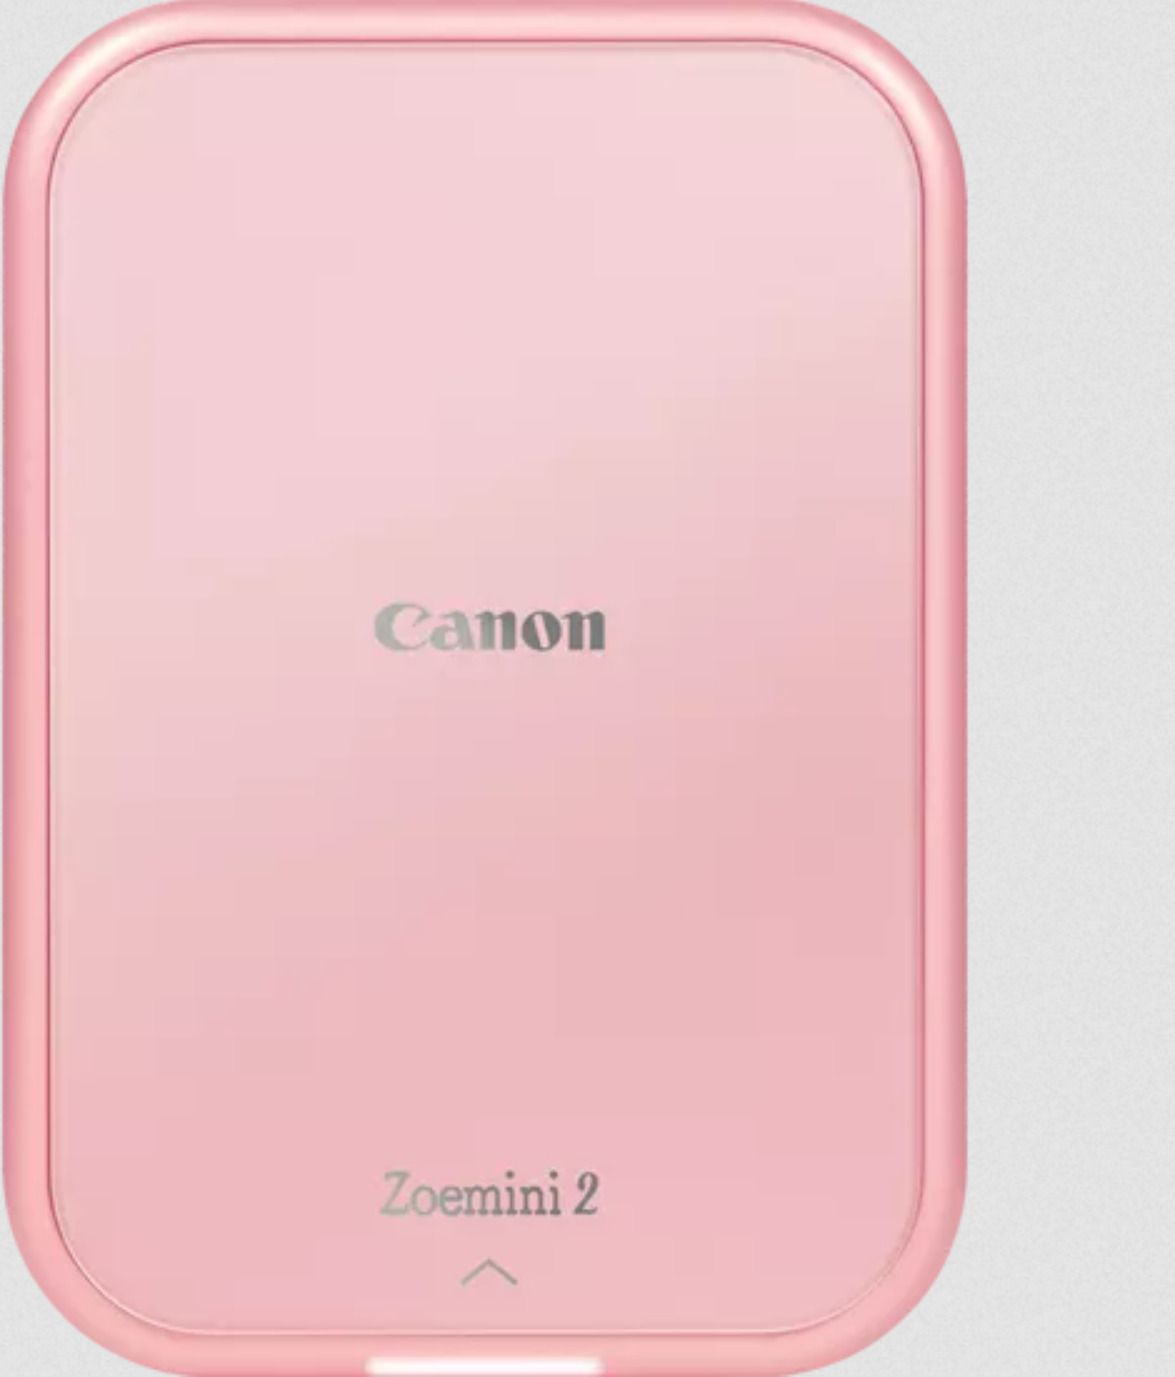 CANON Zoemini 2 - Rose gold